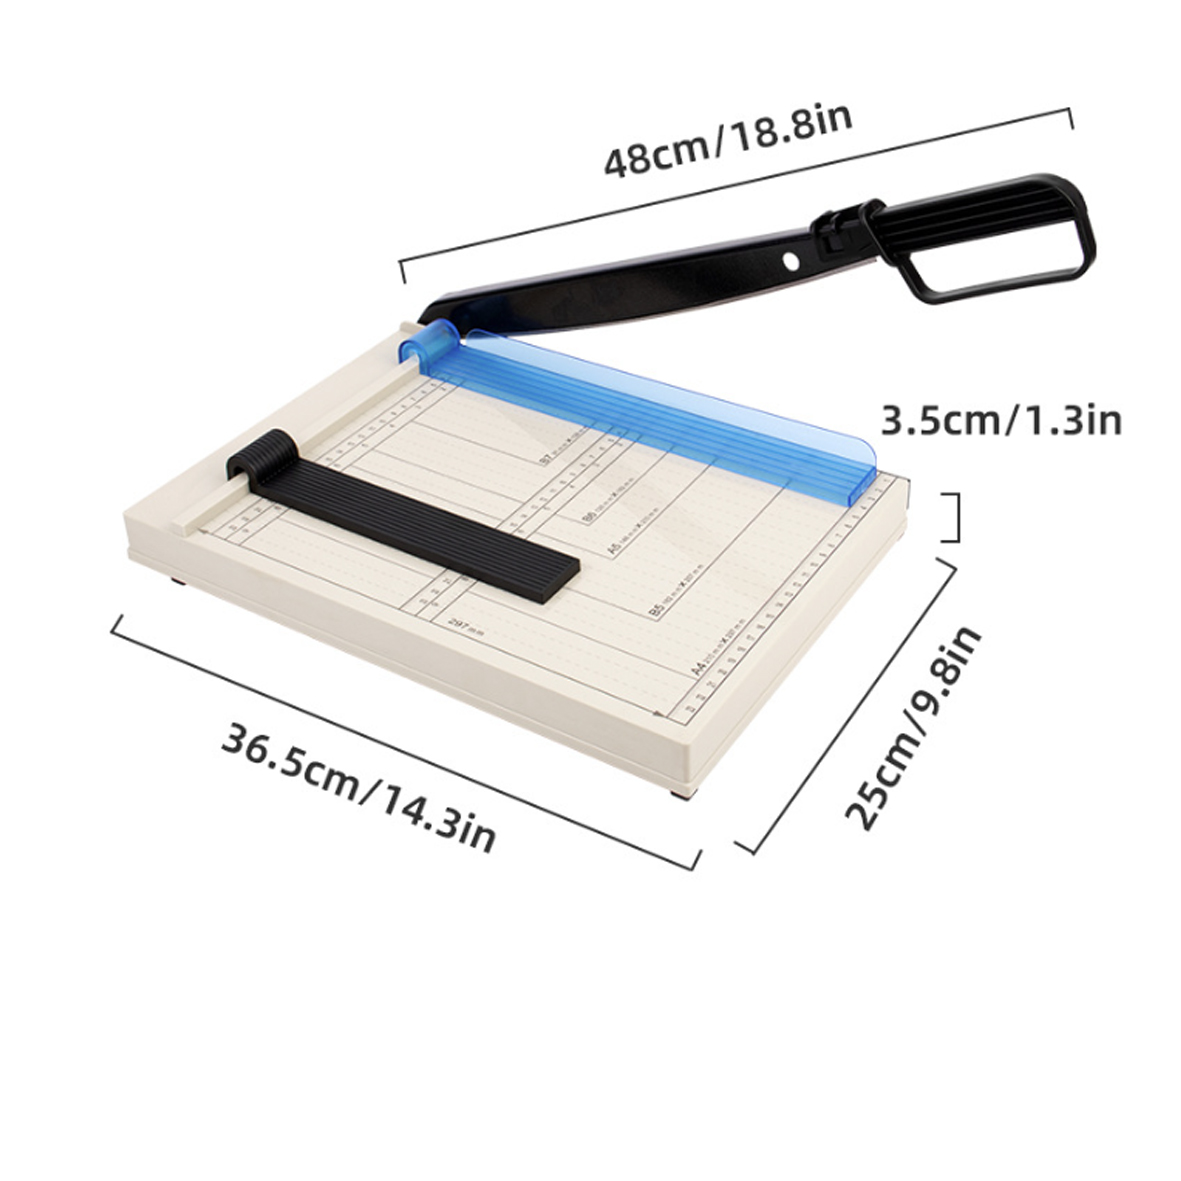 Bàn cắt giấy SL-A A4 có 2 nẹp giữ giấy